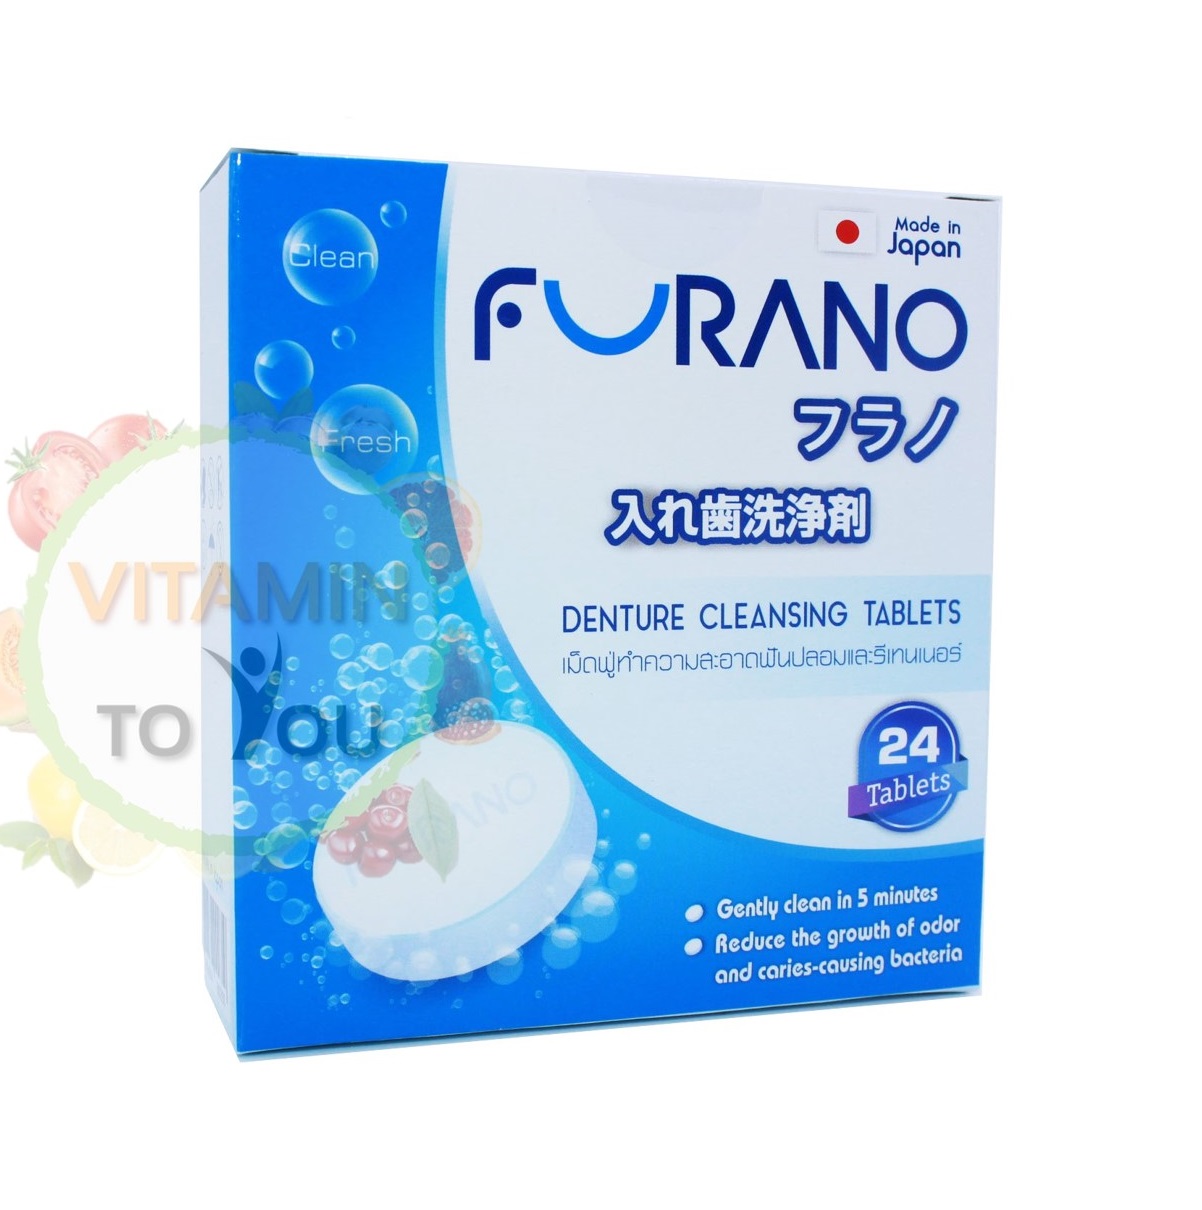 Furano ฟูราโนะ (24 Tablets) เม็ดฟู่ทำความสะอาดฟันปลอมและรีเทนเนอร์